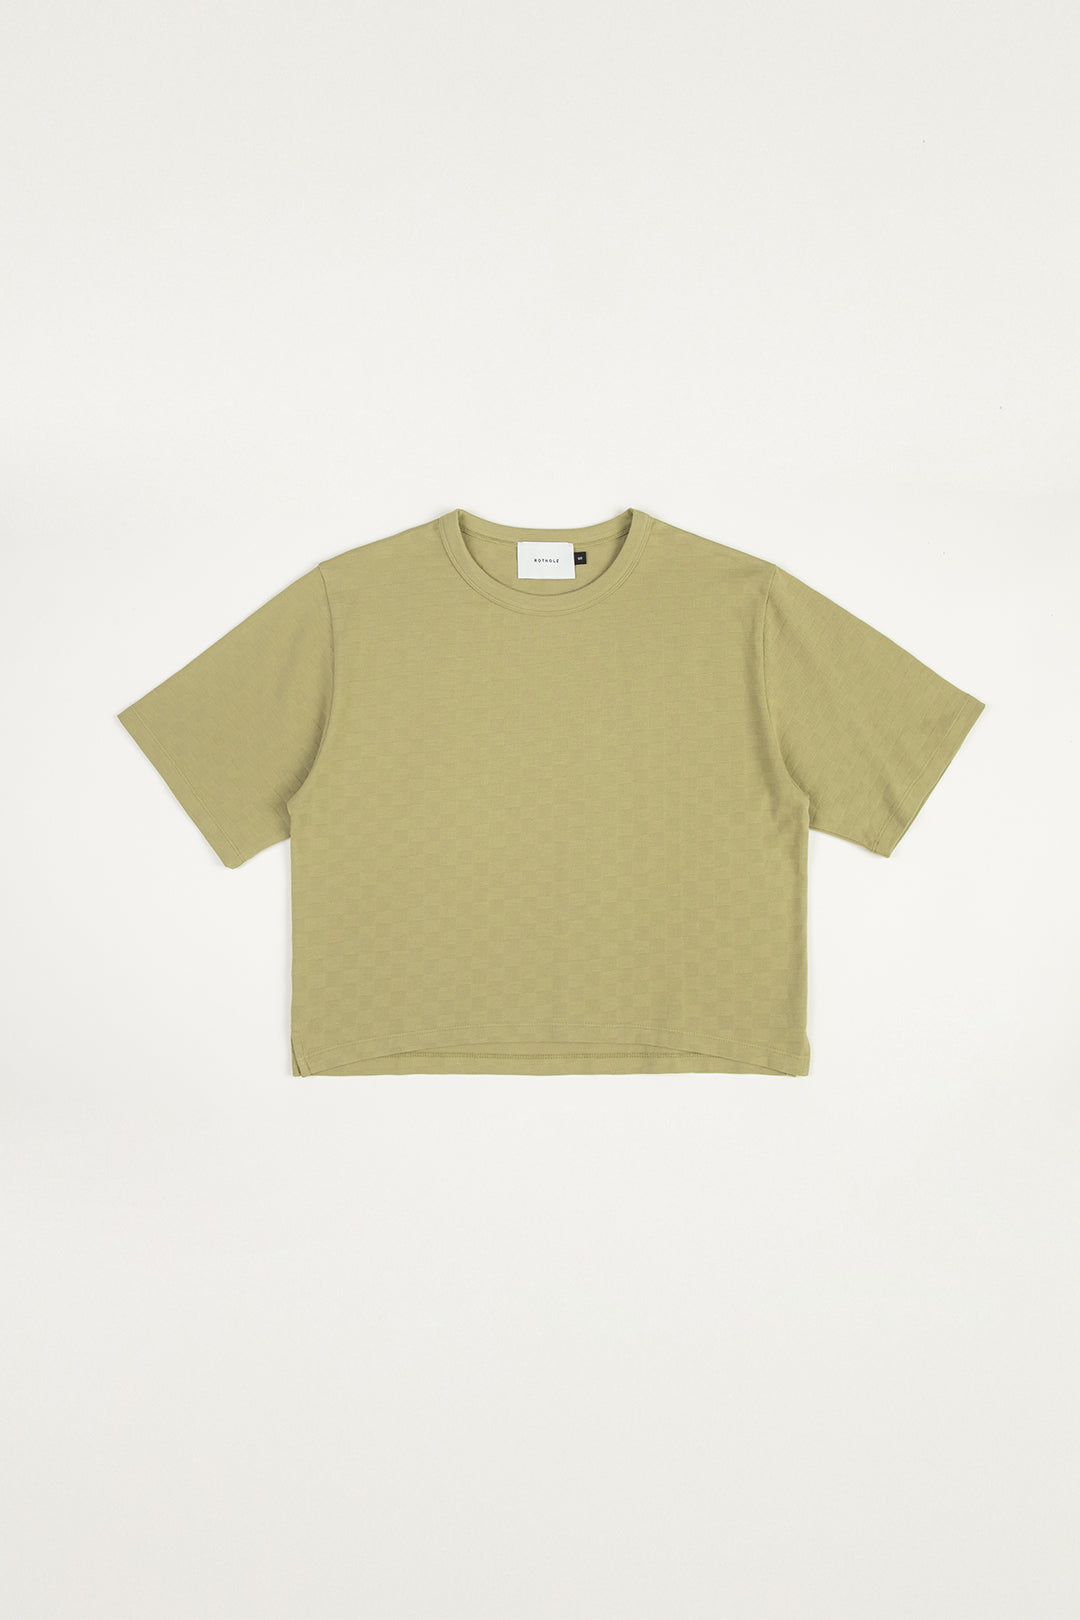 Grünes T-Shirt aus 100% Bio-Baumwolle von Rotholz